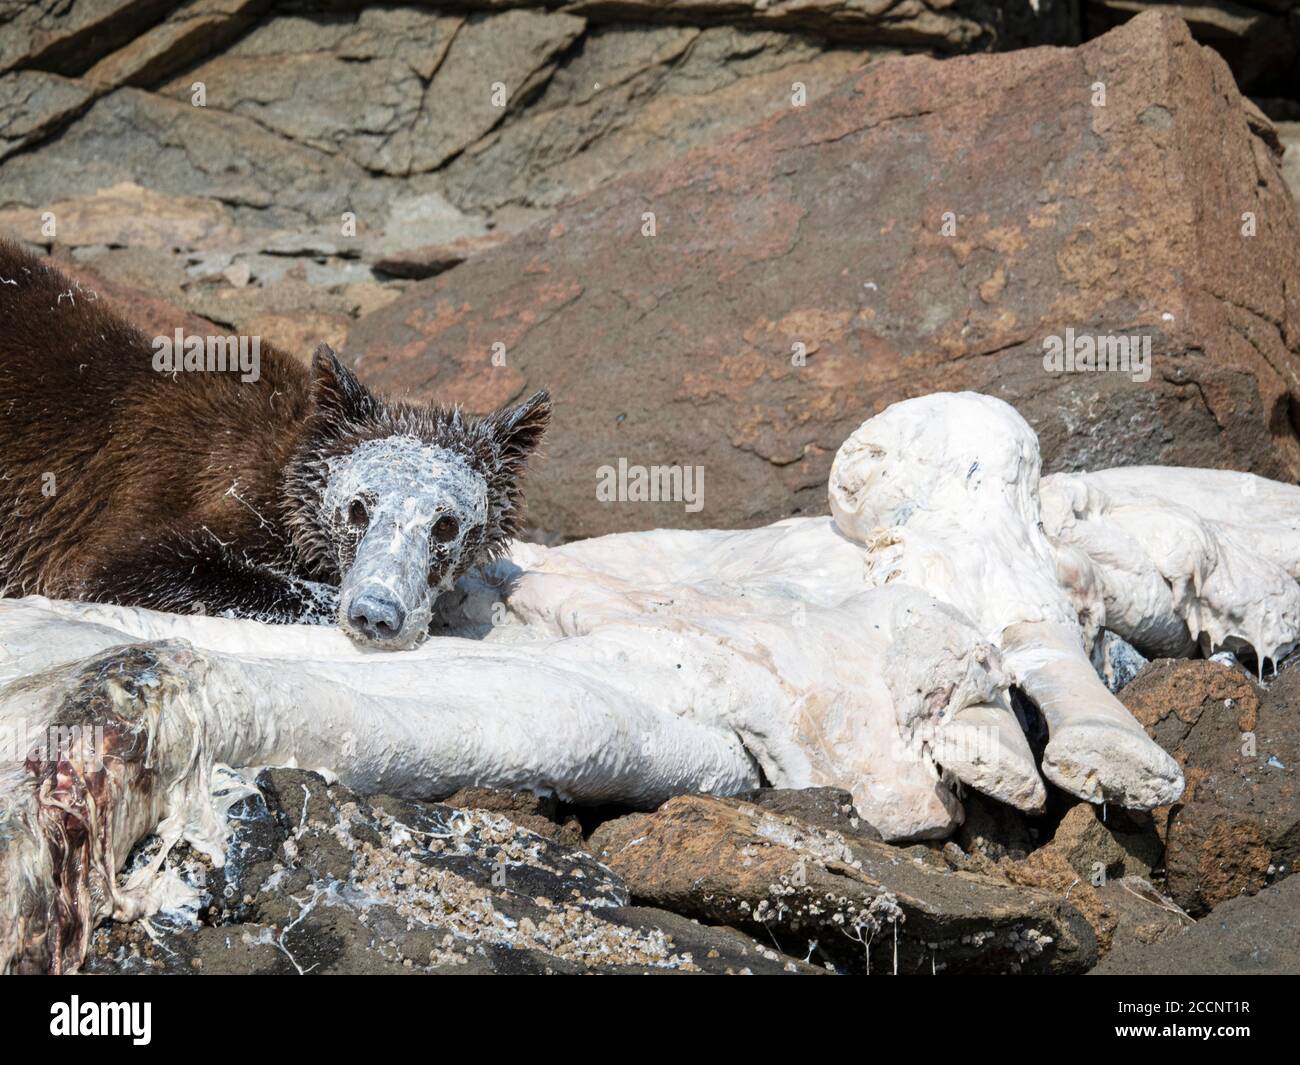 Oso pardo joven, Ursus arctos, alimentándose en beluga muerta, puerto geográfico, Parque Nacional Katmai, Alaska, EE.UU. Foto de stock